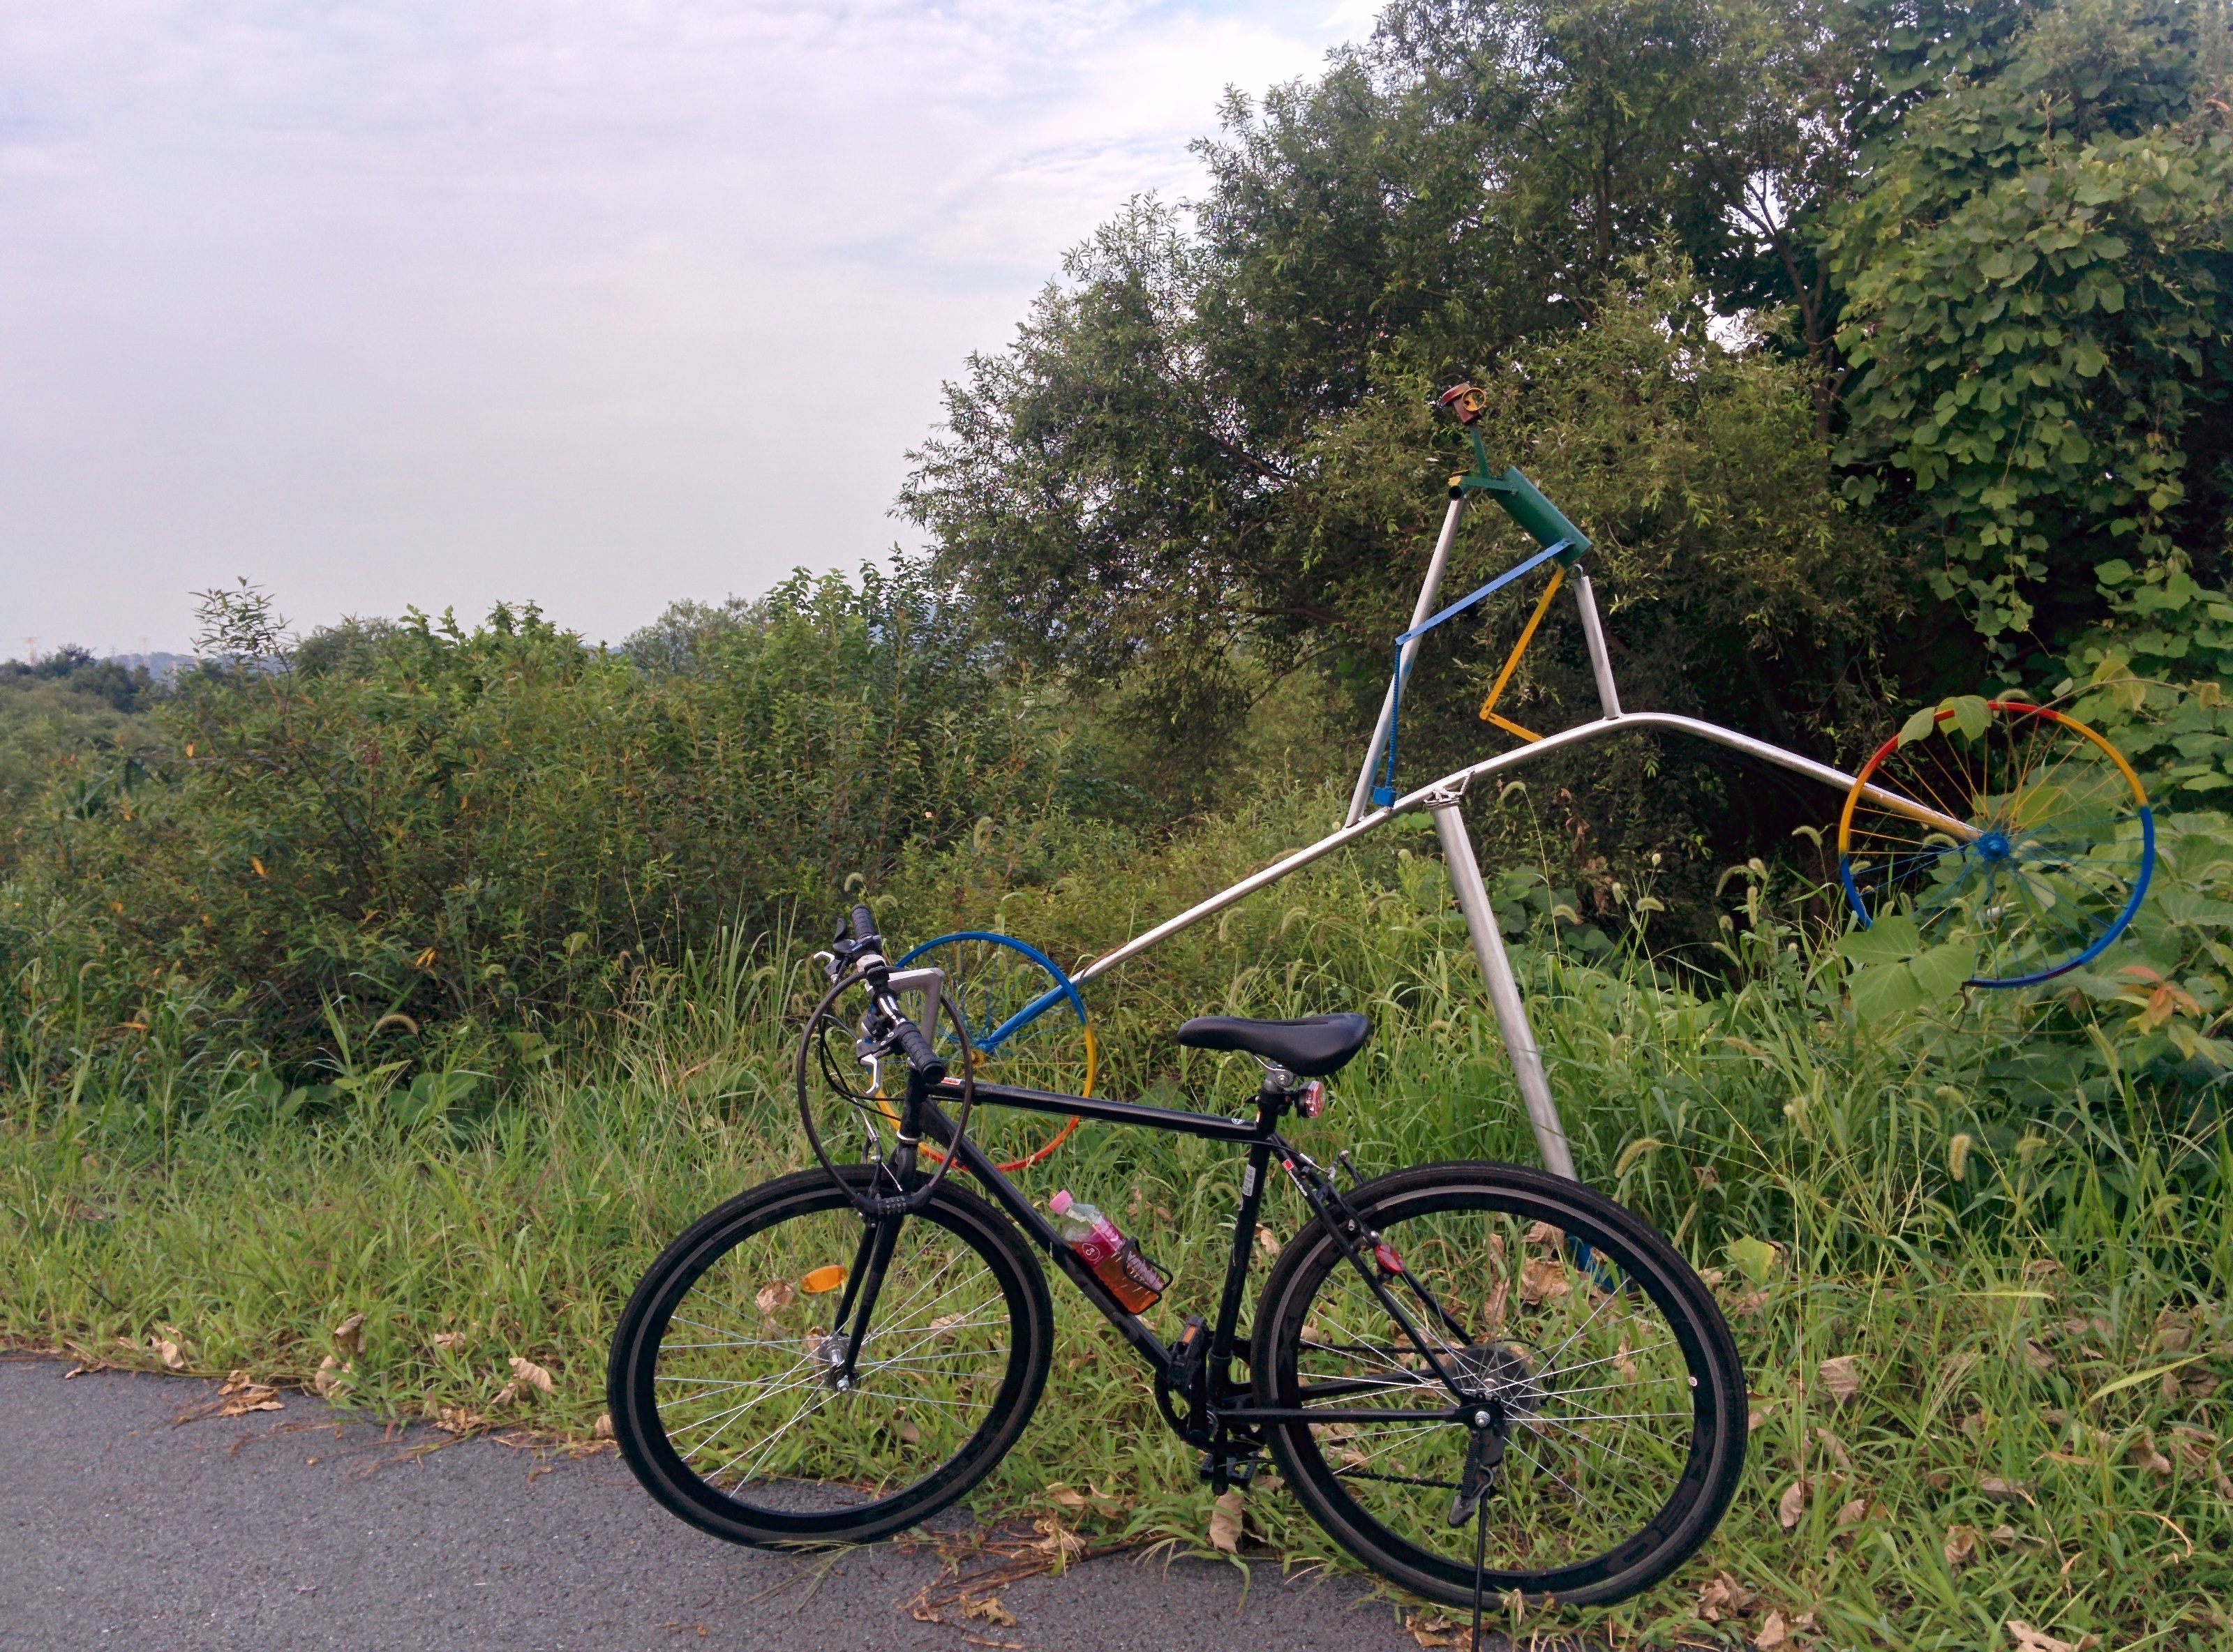 IMG_20150823_174102.jpg 세종시 자전거도로에는 자전거 조각이 몇 개 있다.